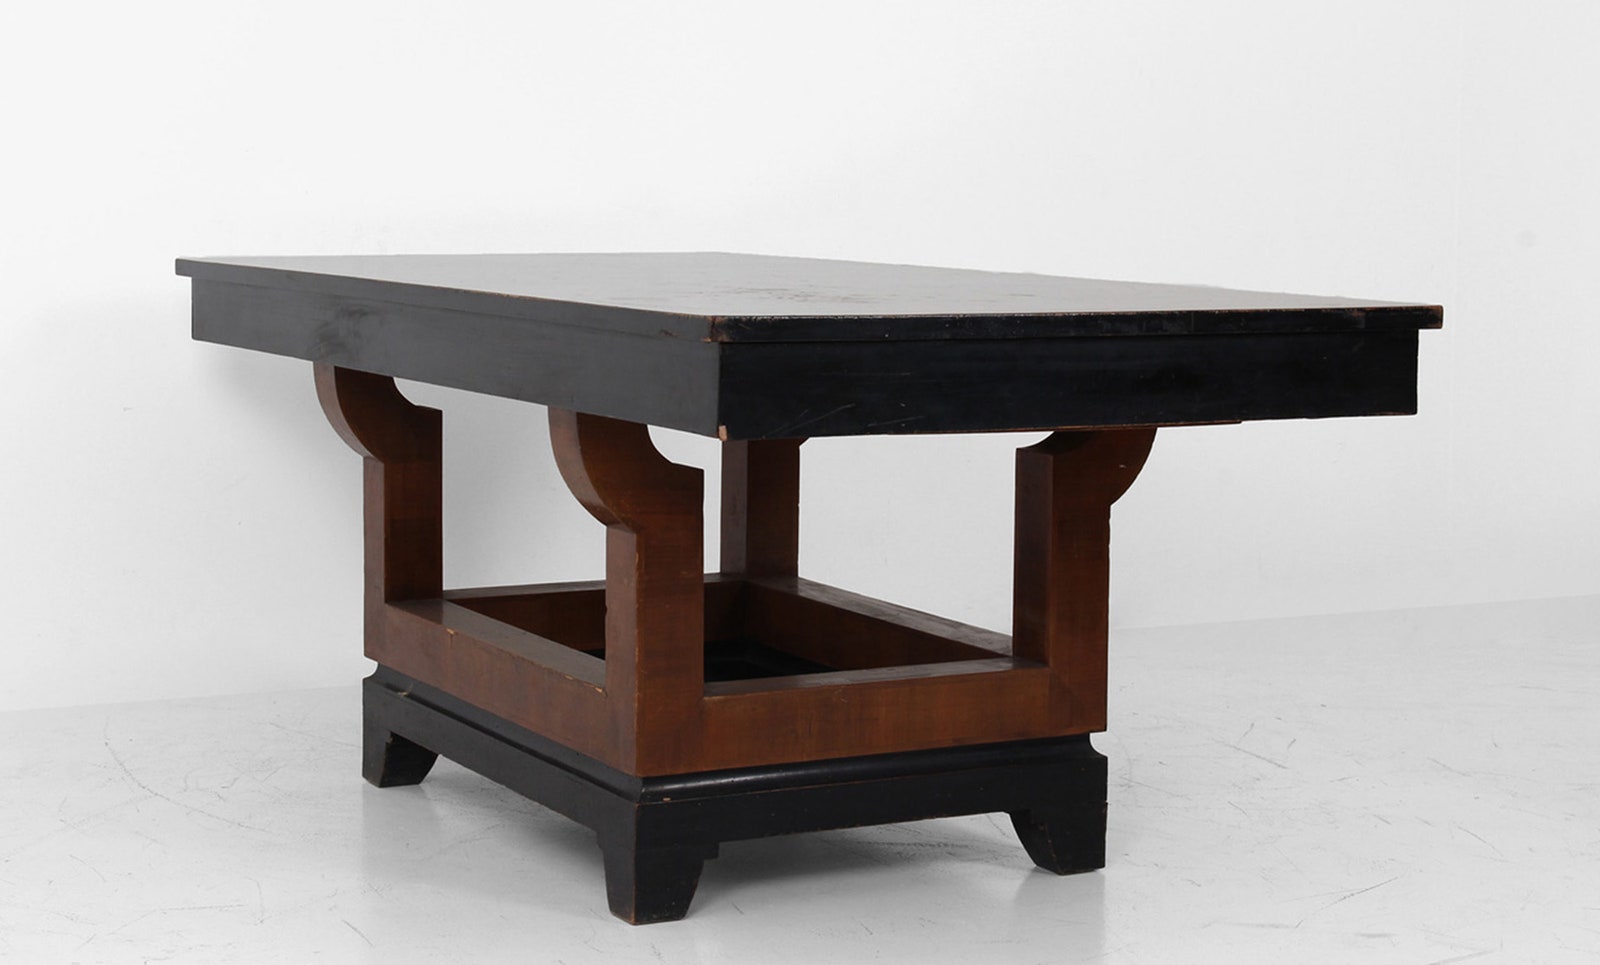 Обеденный стол по проекту Пьеро Порталуппи. Два выдвижных ящика четвероногое основание из эбонитированной древесины...